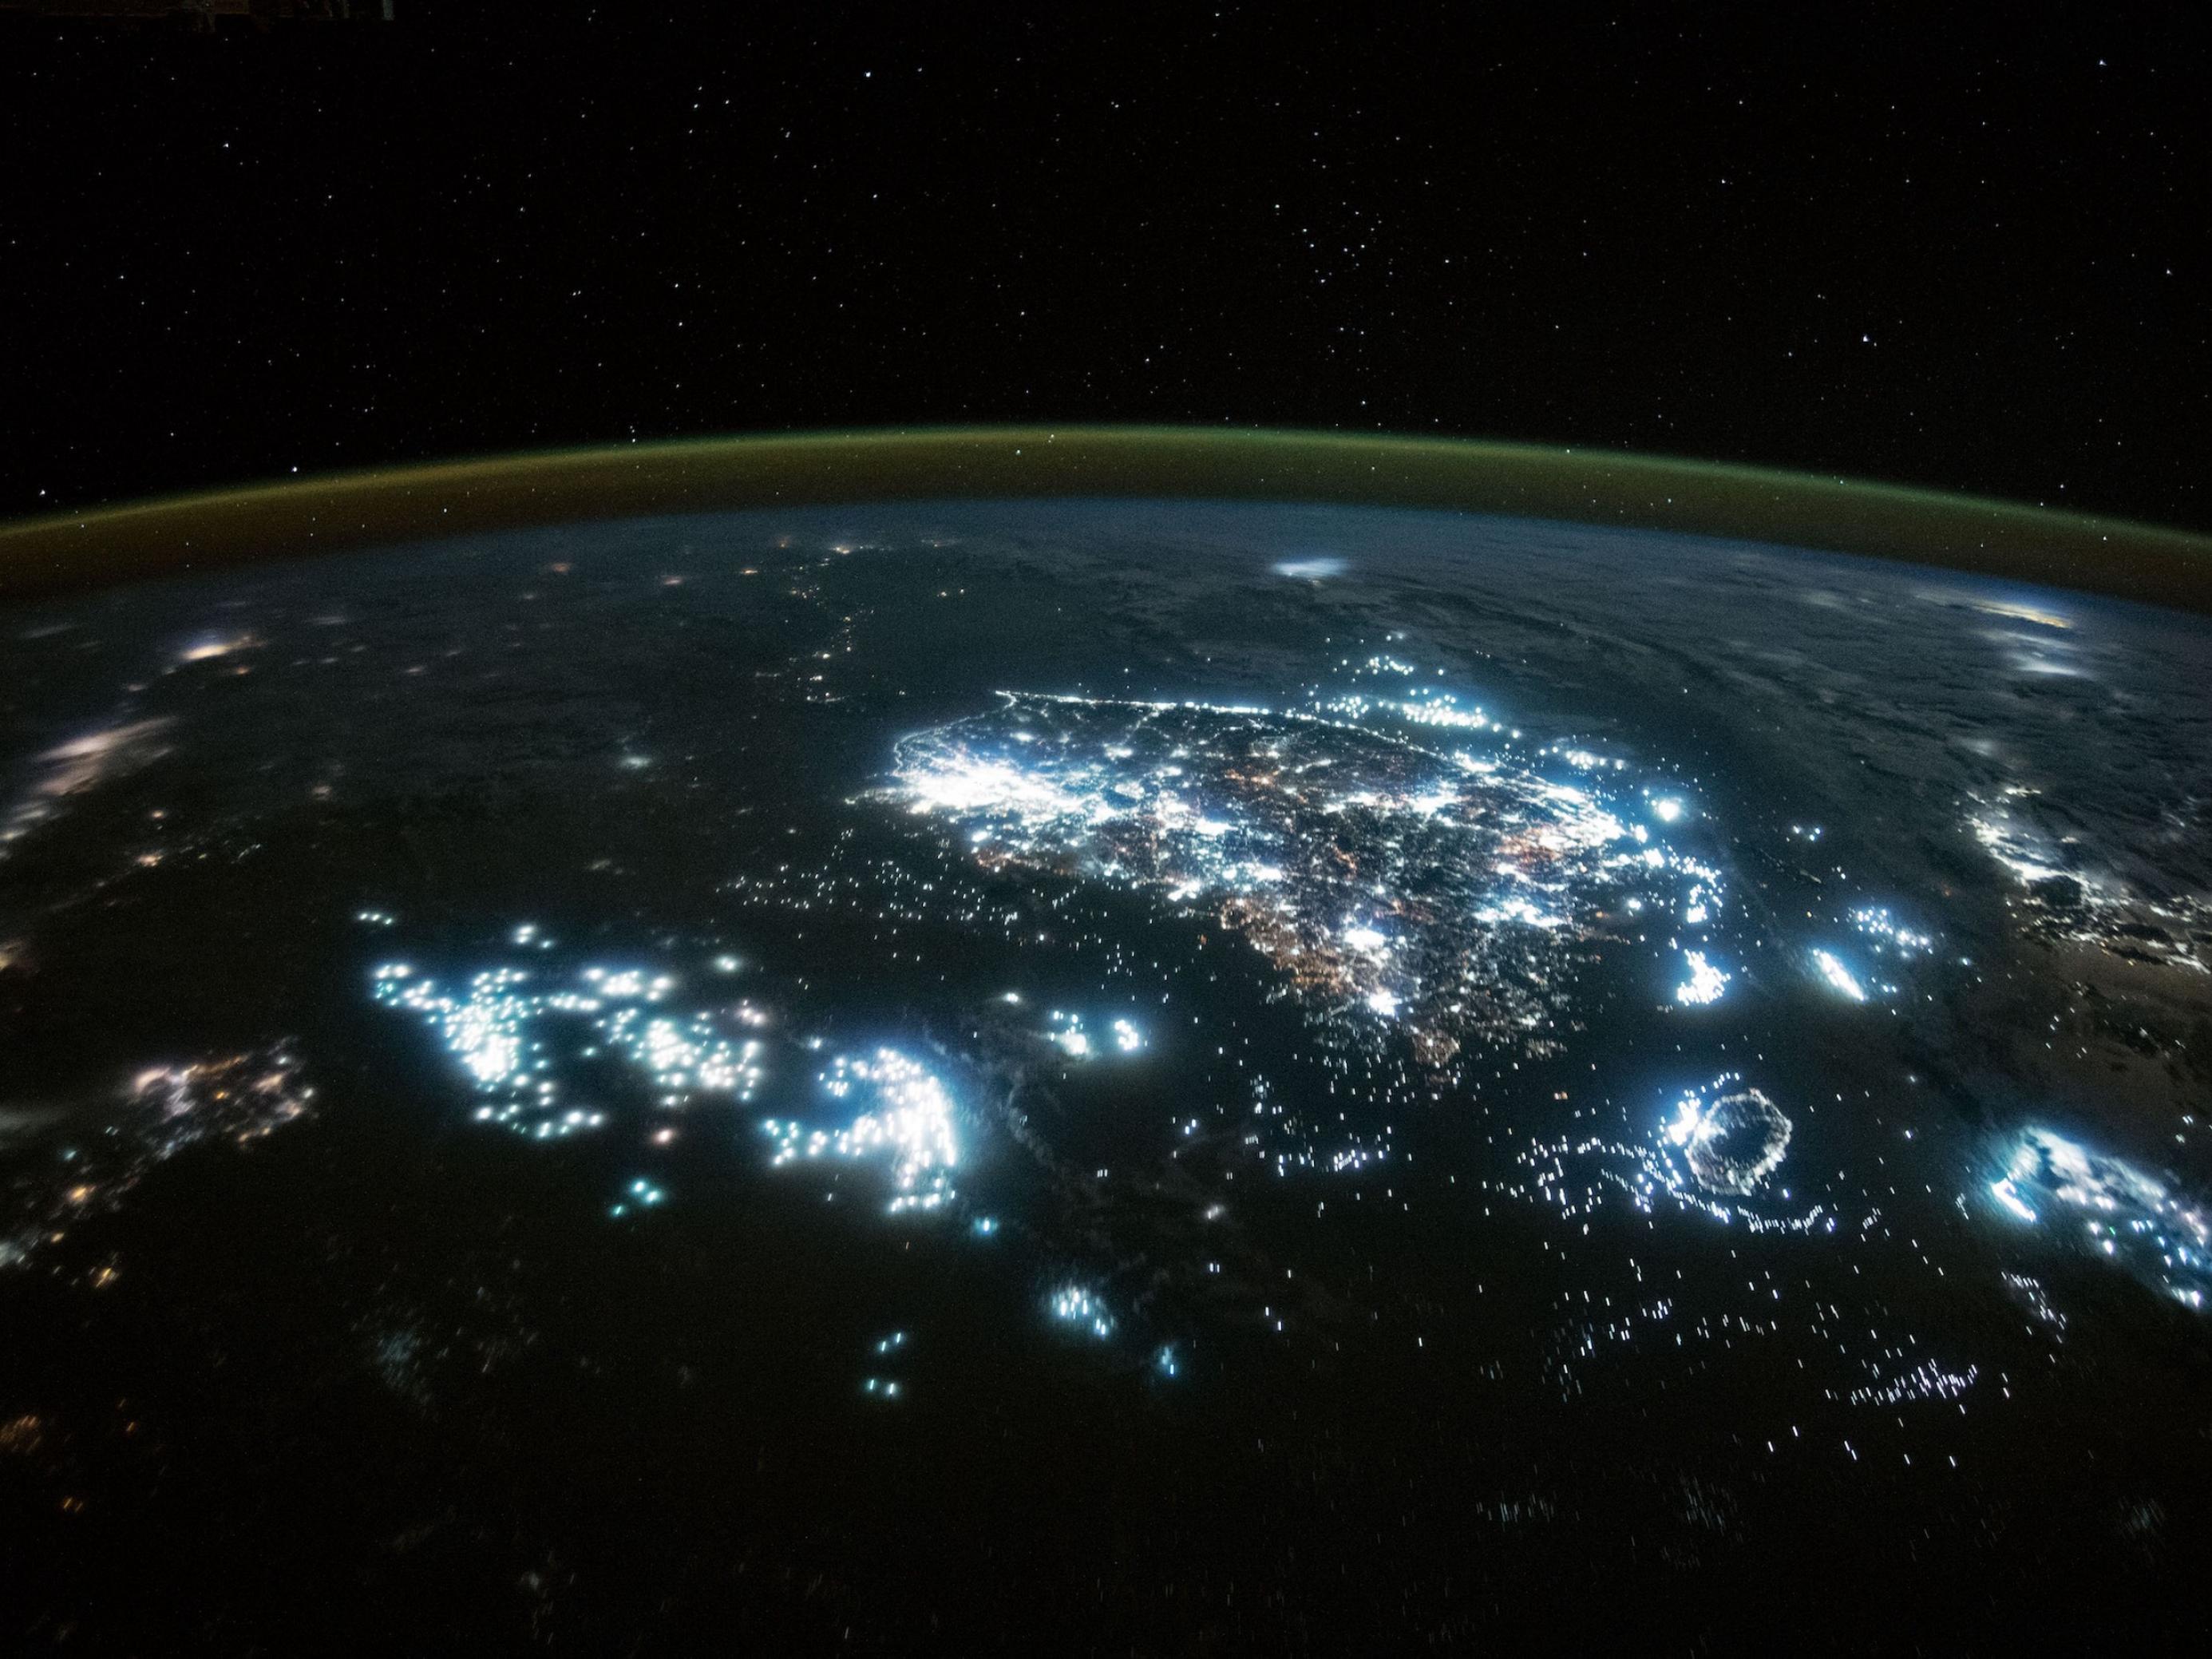 Nachtaufnahme vom Weltall aus, man sieht die gekrümmte Erdkugel und nächtliche Städte, die hell leuchten, sowie helle Flecken auf dem Meer, die Fischereiflotten.